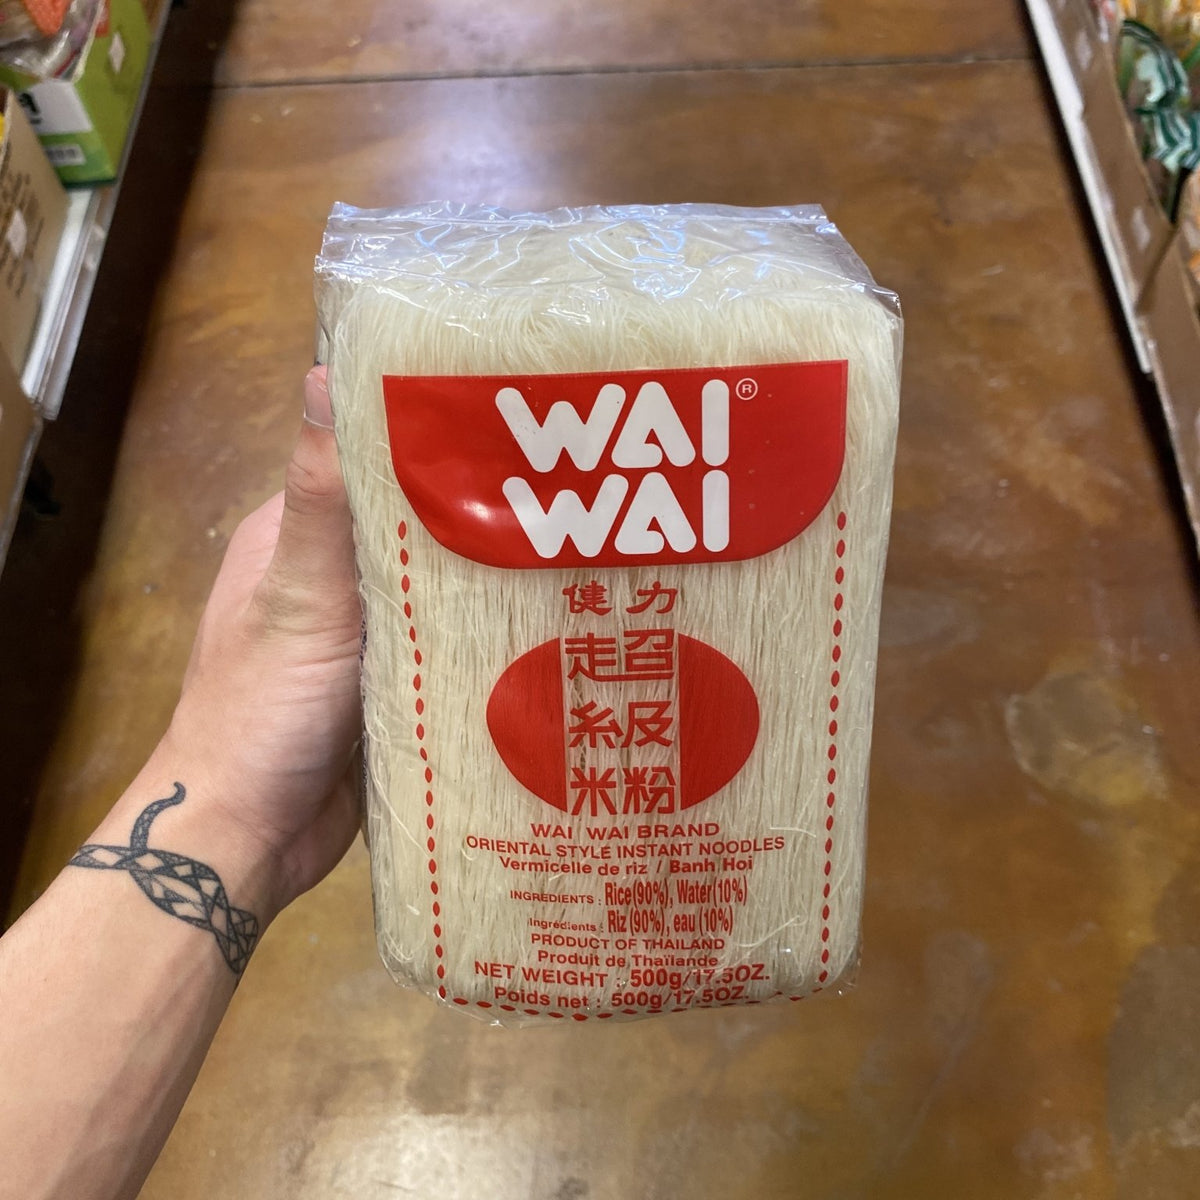 Vermicelle de riz - Wai Wai - Nouilles 